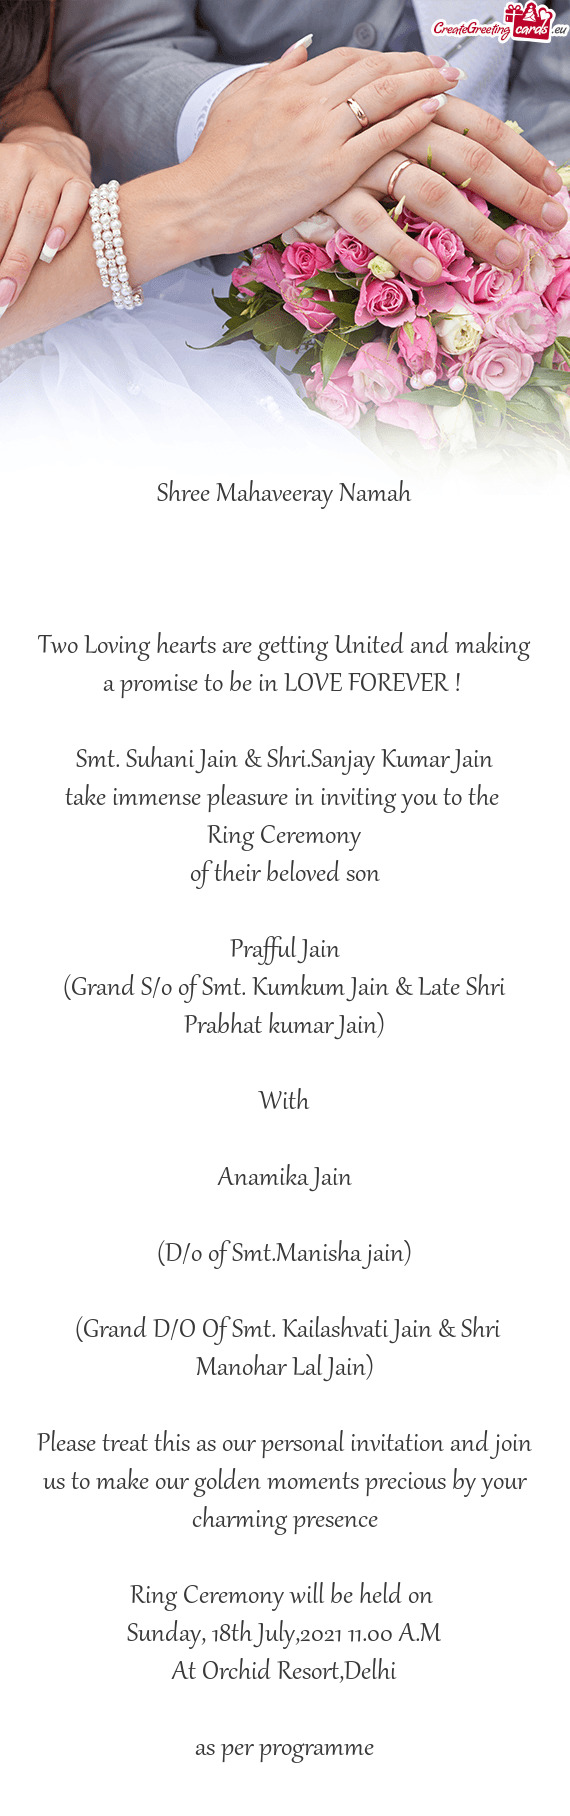 Smt. Suhani Jain & Shri.Sanjay Kumar Jain